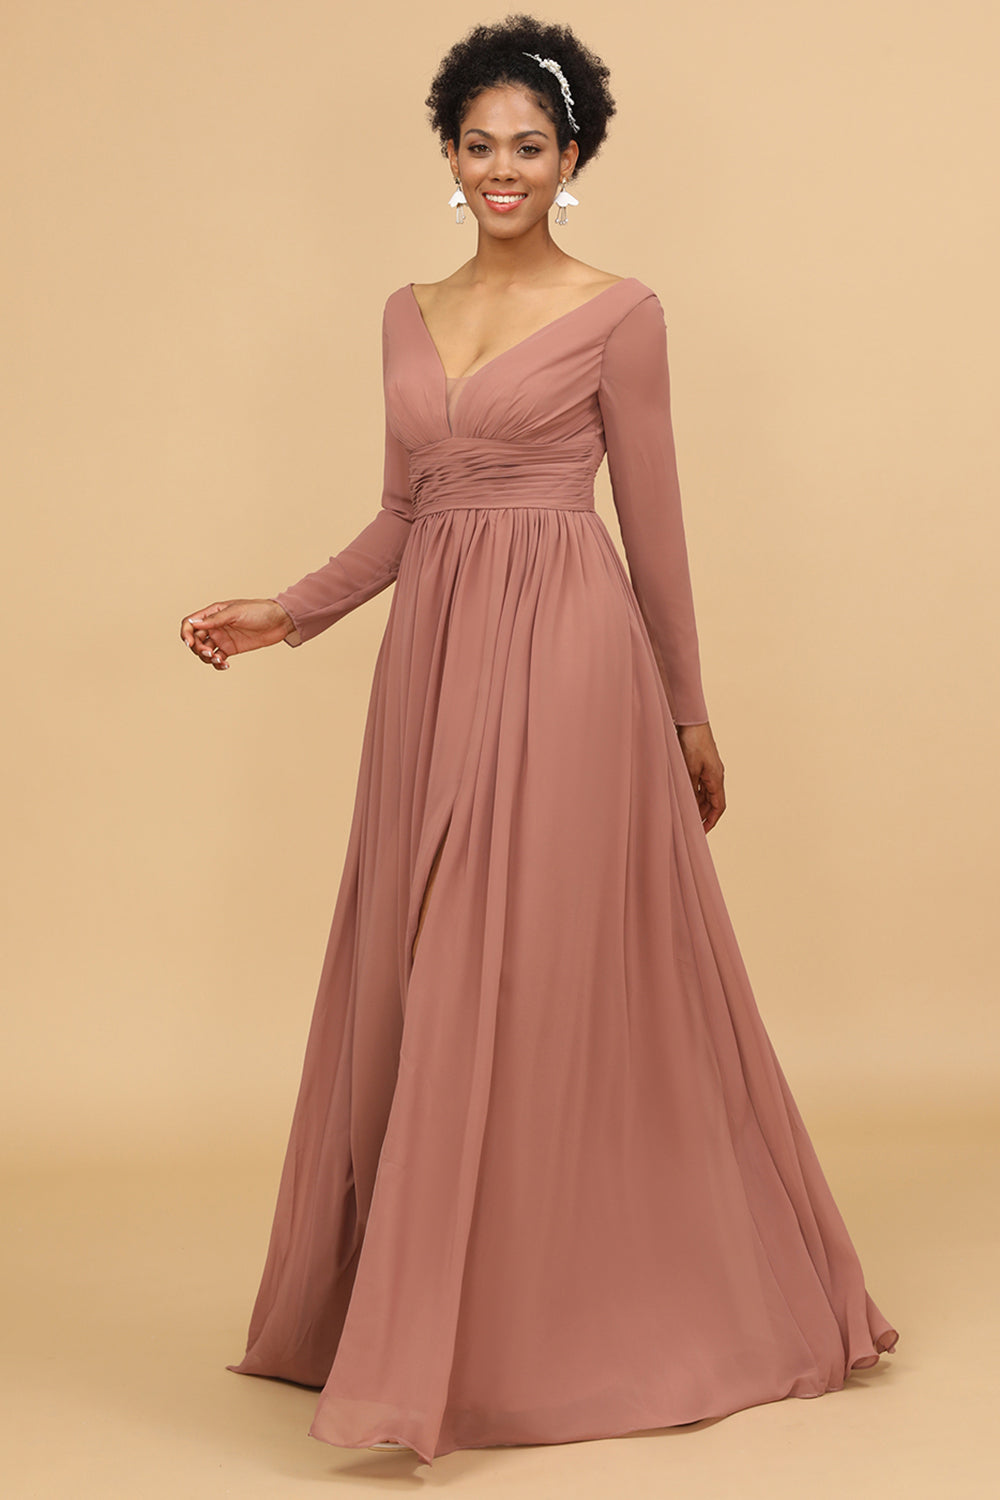 Blush V-Neck Long Sleeves Bridesmaid Dress